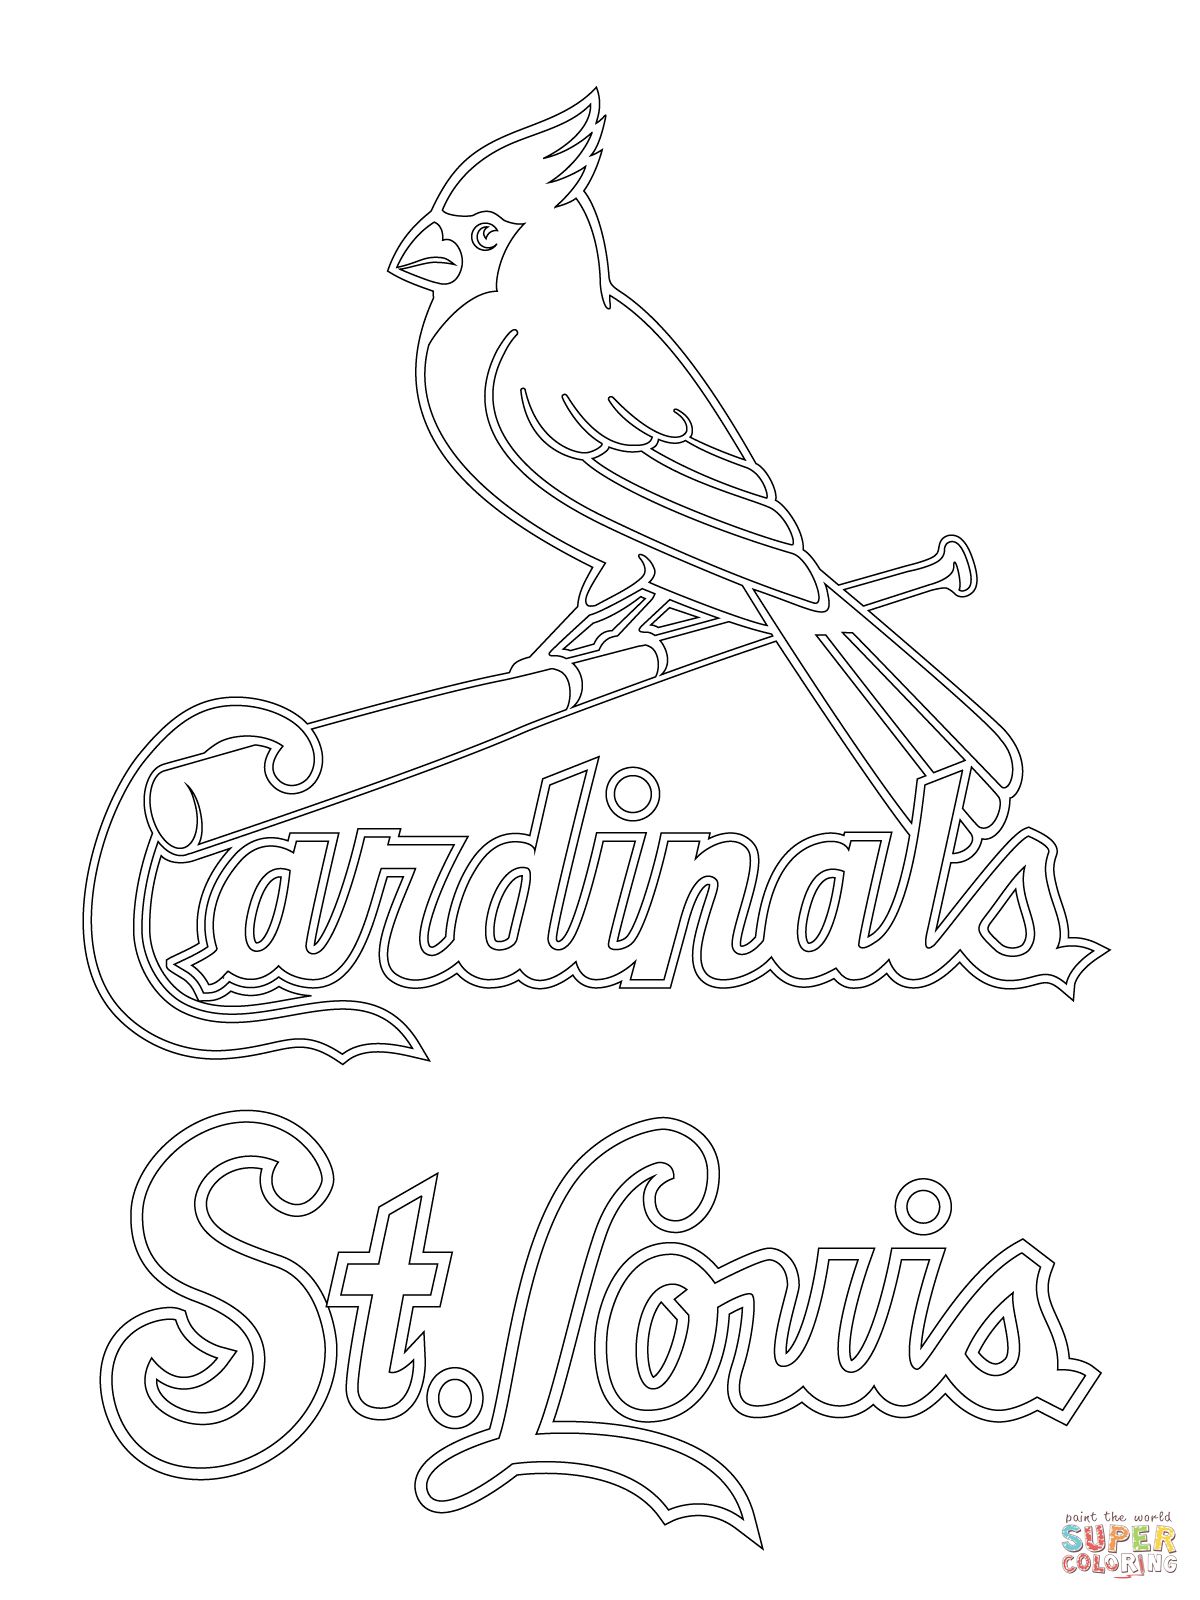 St. Louis Cardinals Logo coloring page | Baseball coloring pages, St louis  cardinals, St louis cardinals baseball